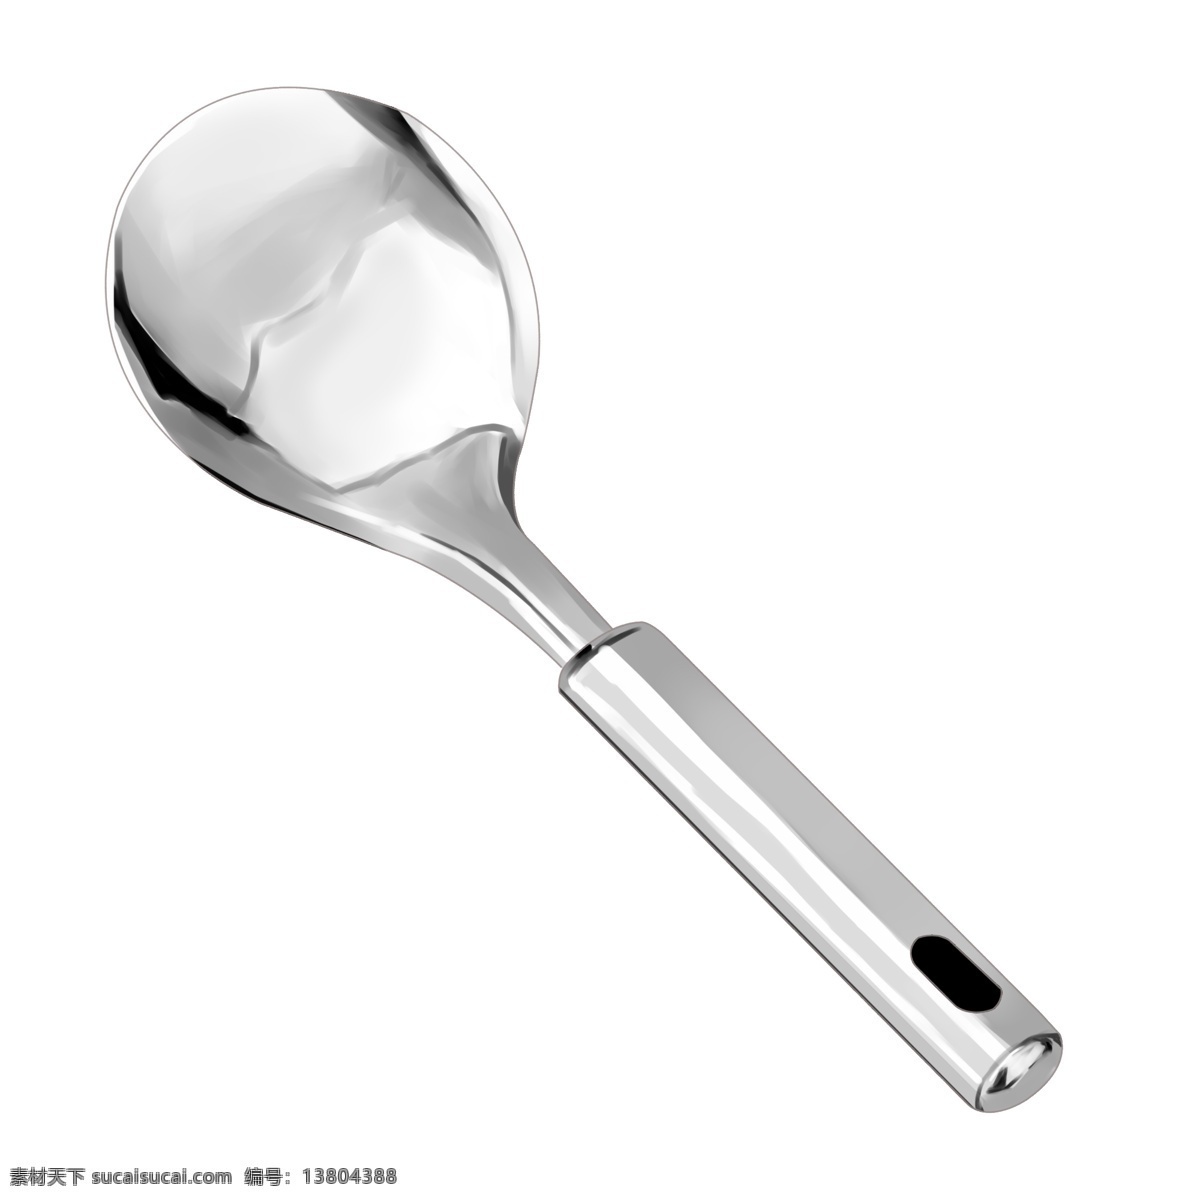 亮 银色 不锈钢 勺子 装饰 不锈钢勺子 仿真 光滑 半圆 产品 实物 汤匙 插图 陶瓷 餐具 简约 发光 亮银色